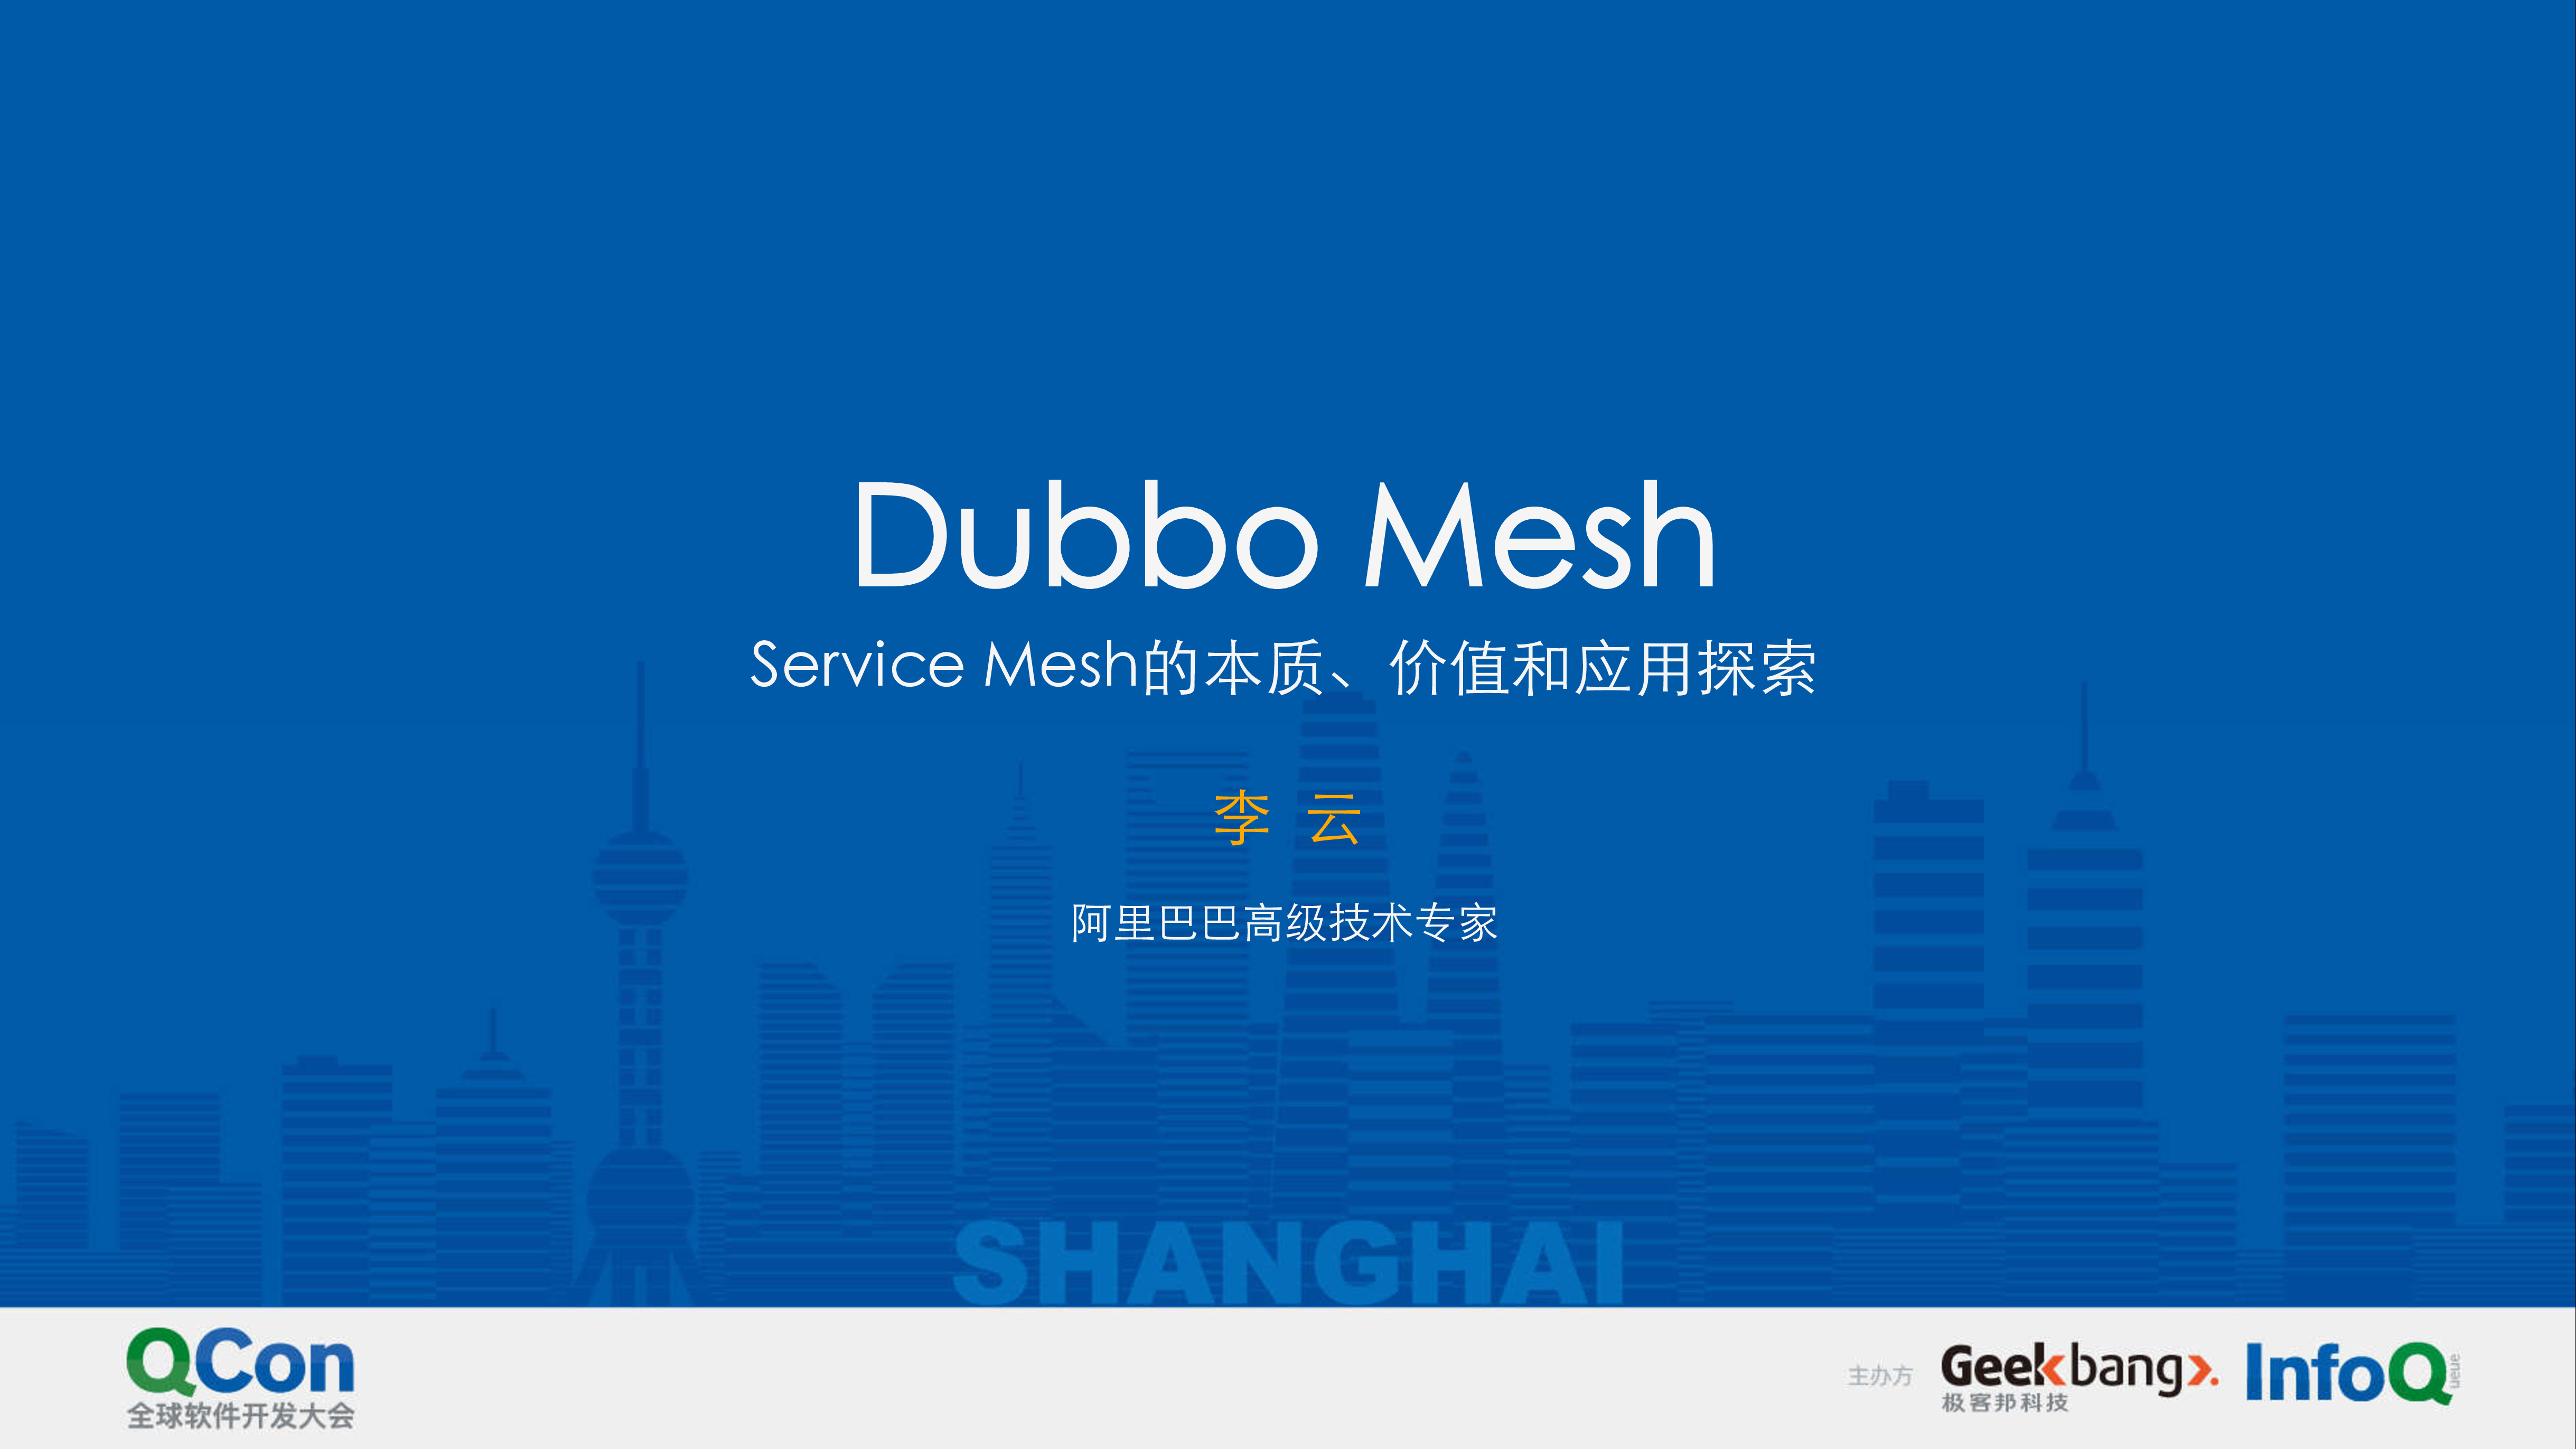 DubboMesh——ServiceMesh的本质、价值与应用探索